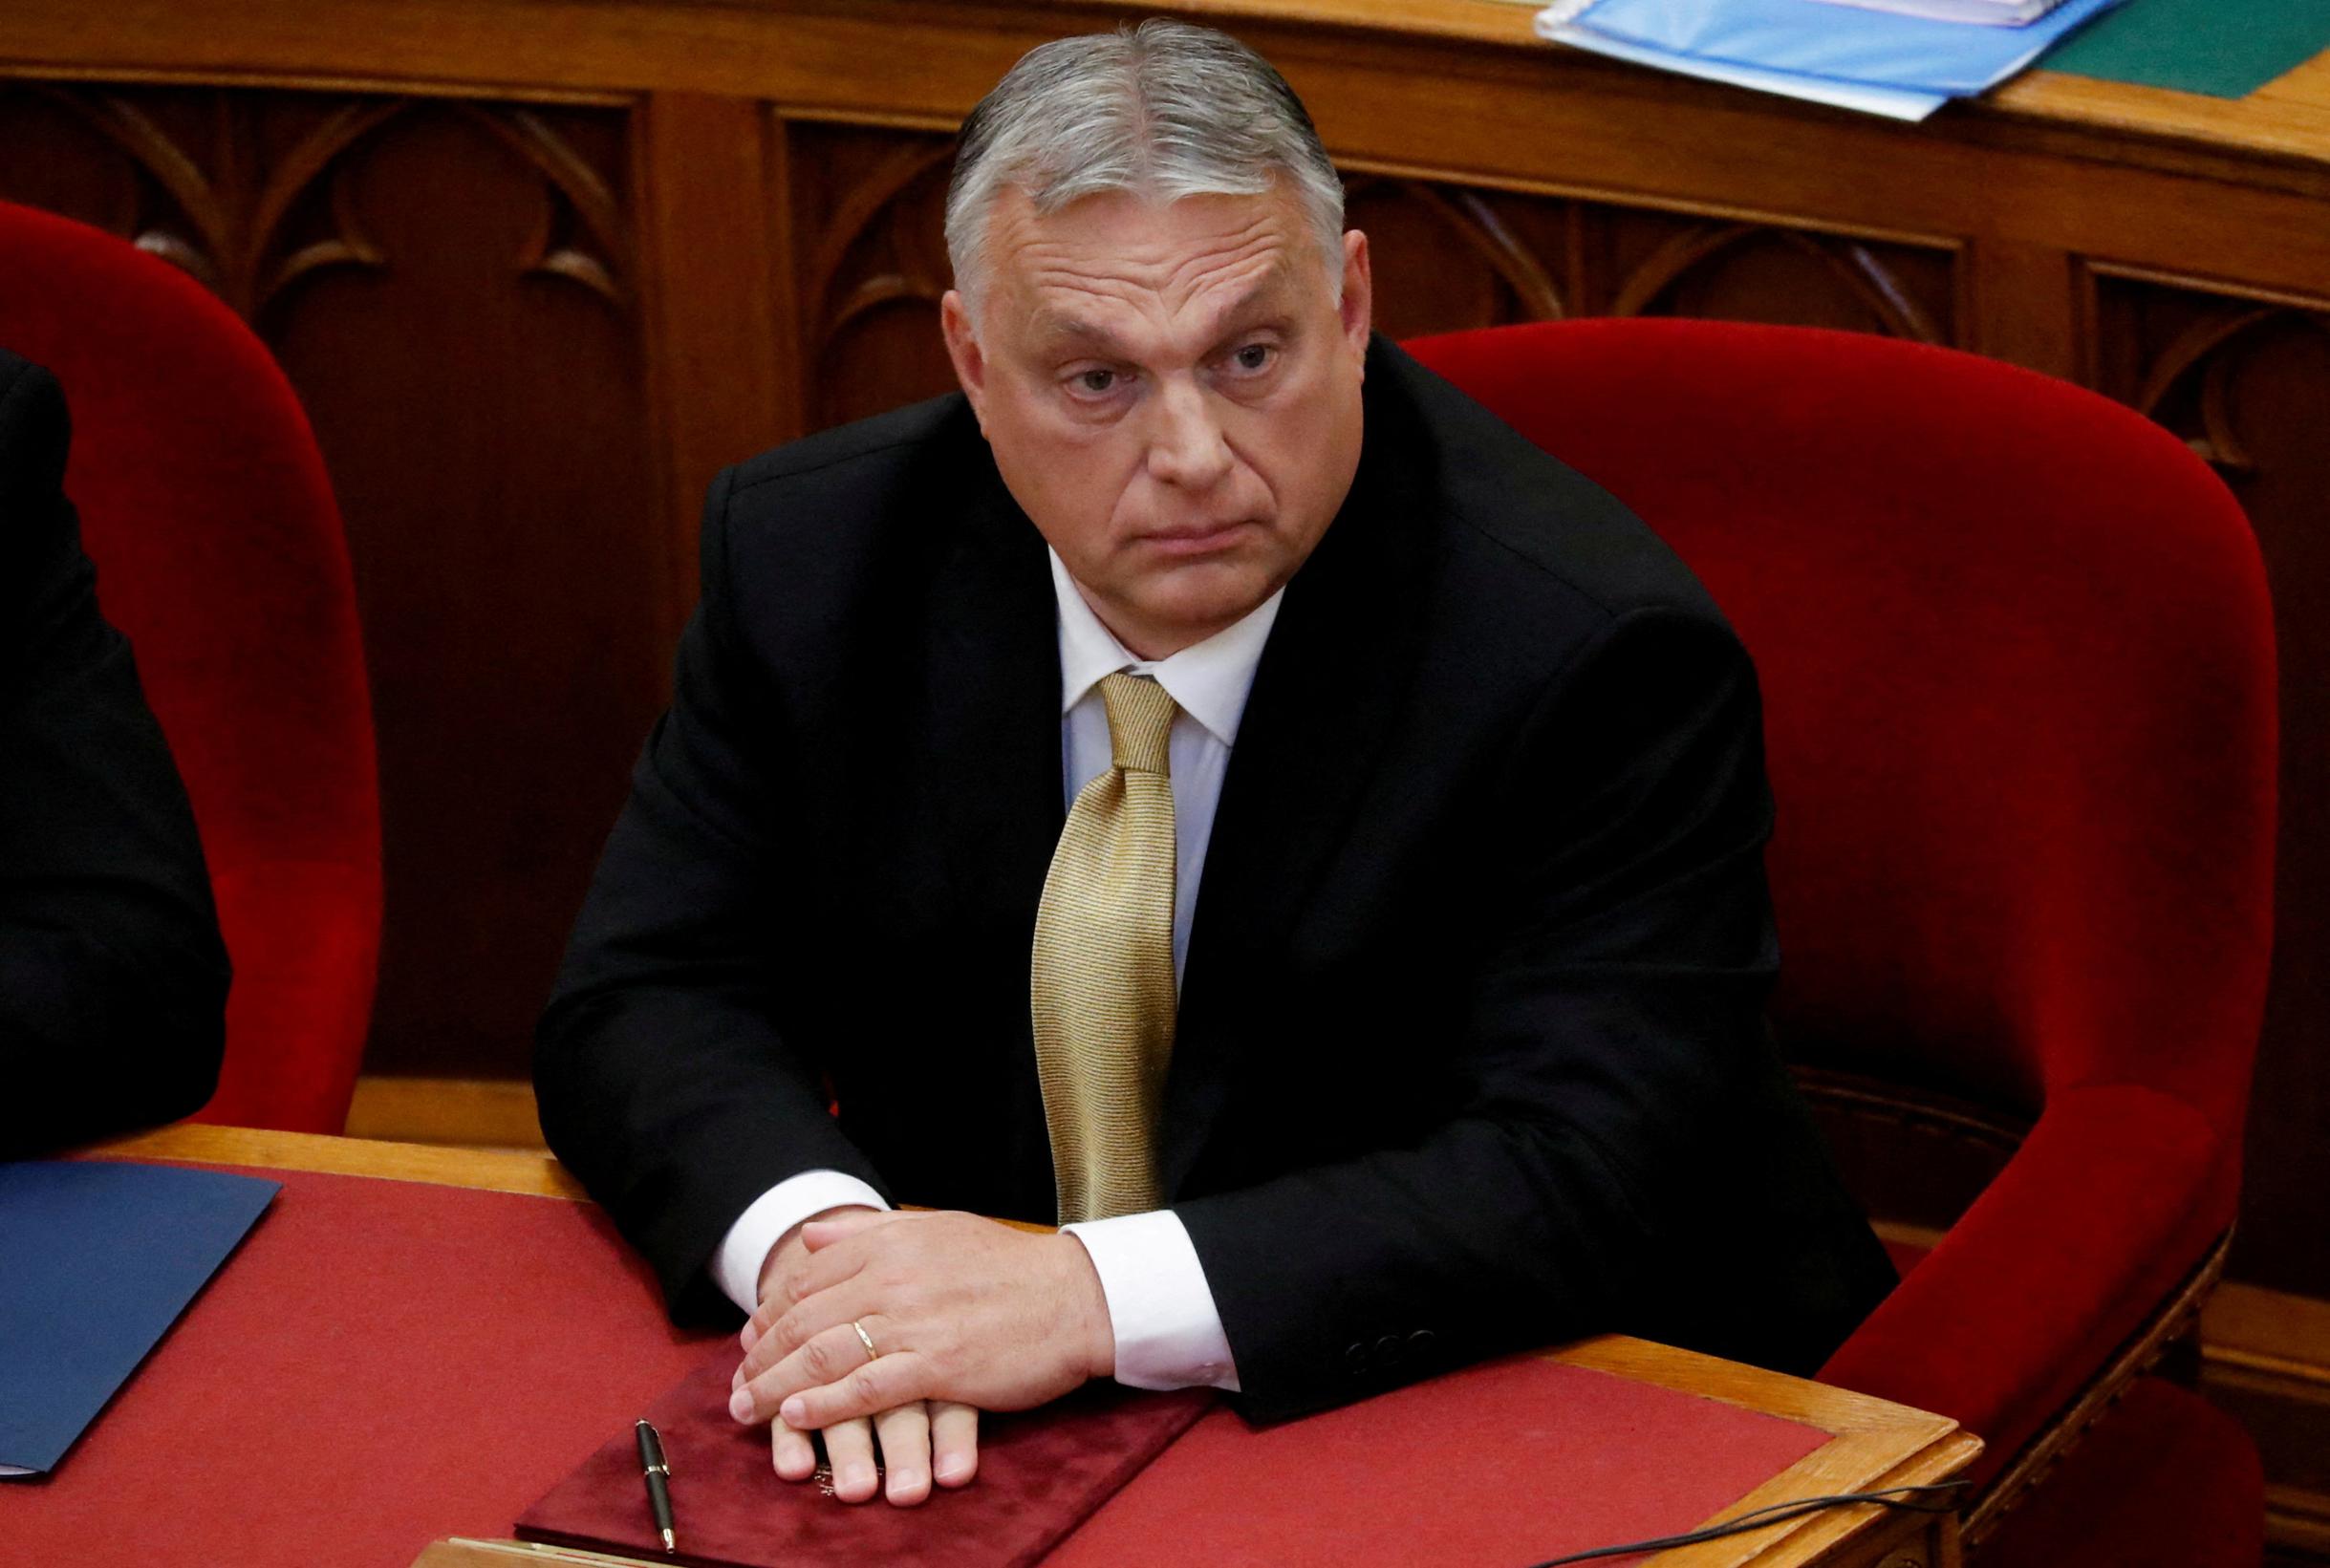 Mokreb volta le spalle a Orban dopo i “commenti nazisti”